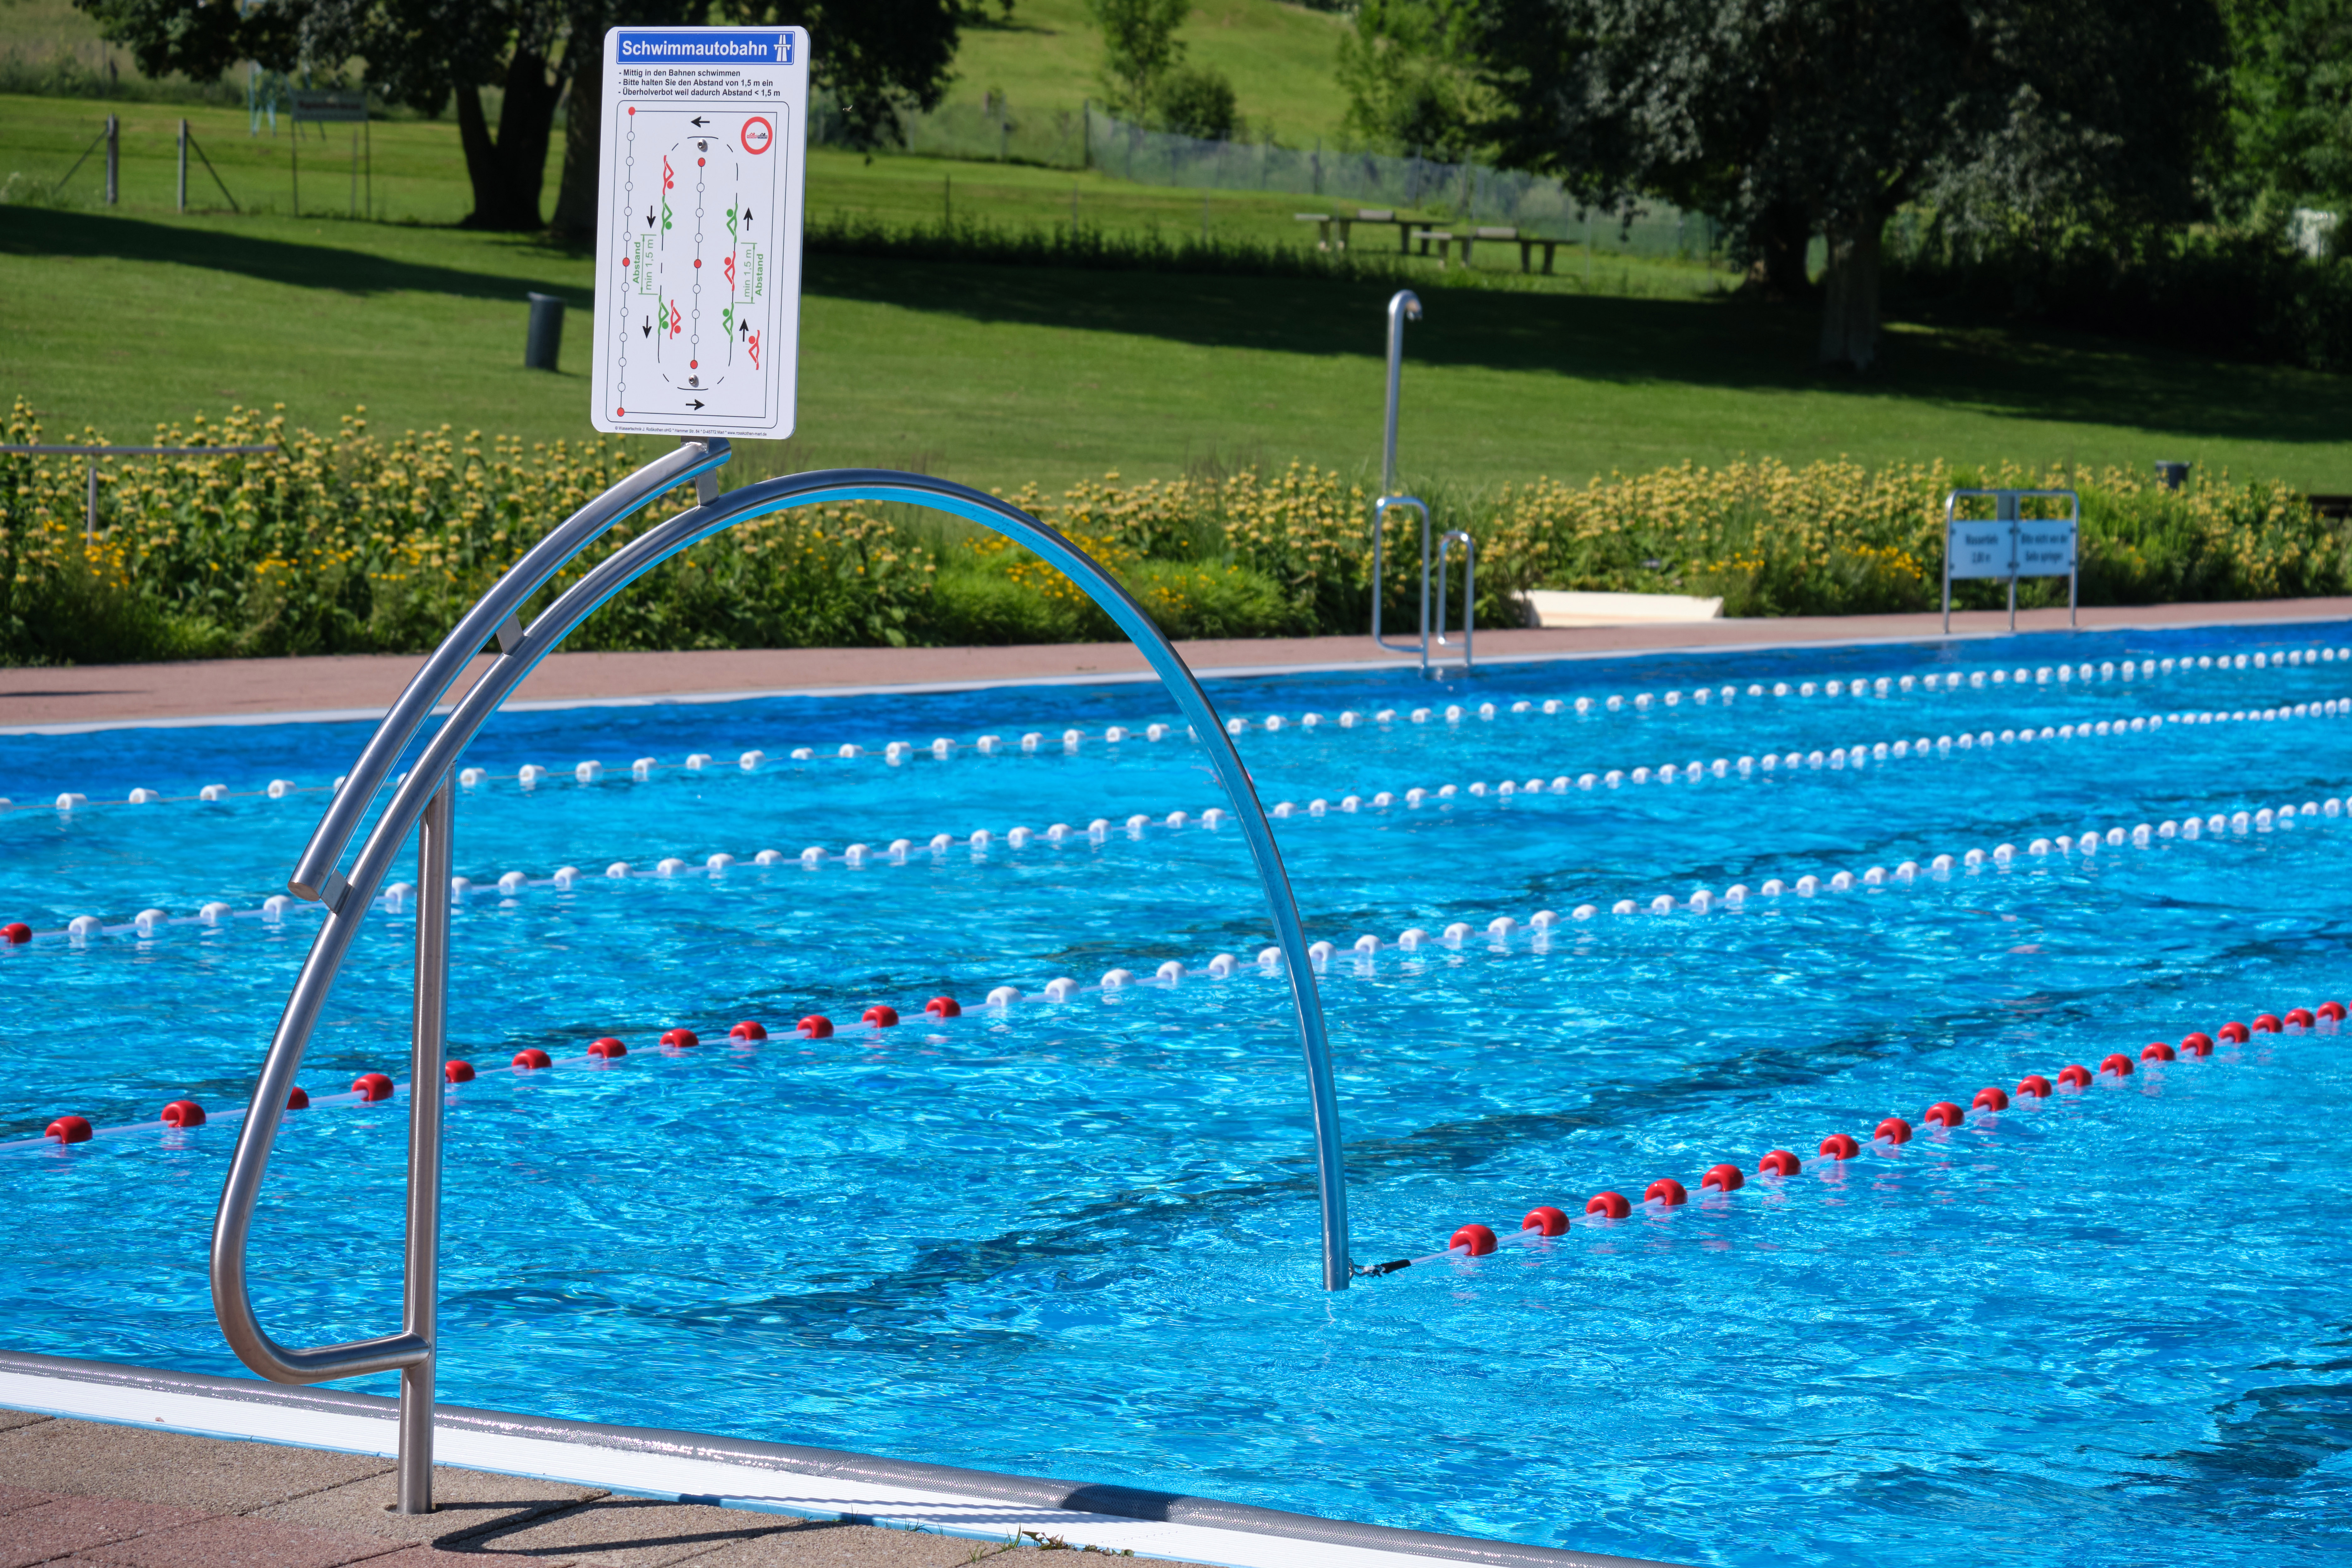 Unsere Tipps für mehr Abstand im Schwimmbecken